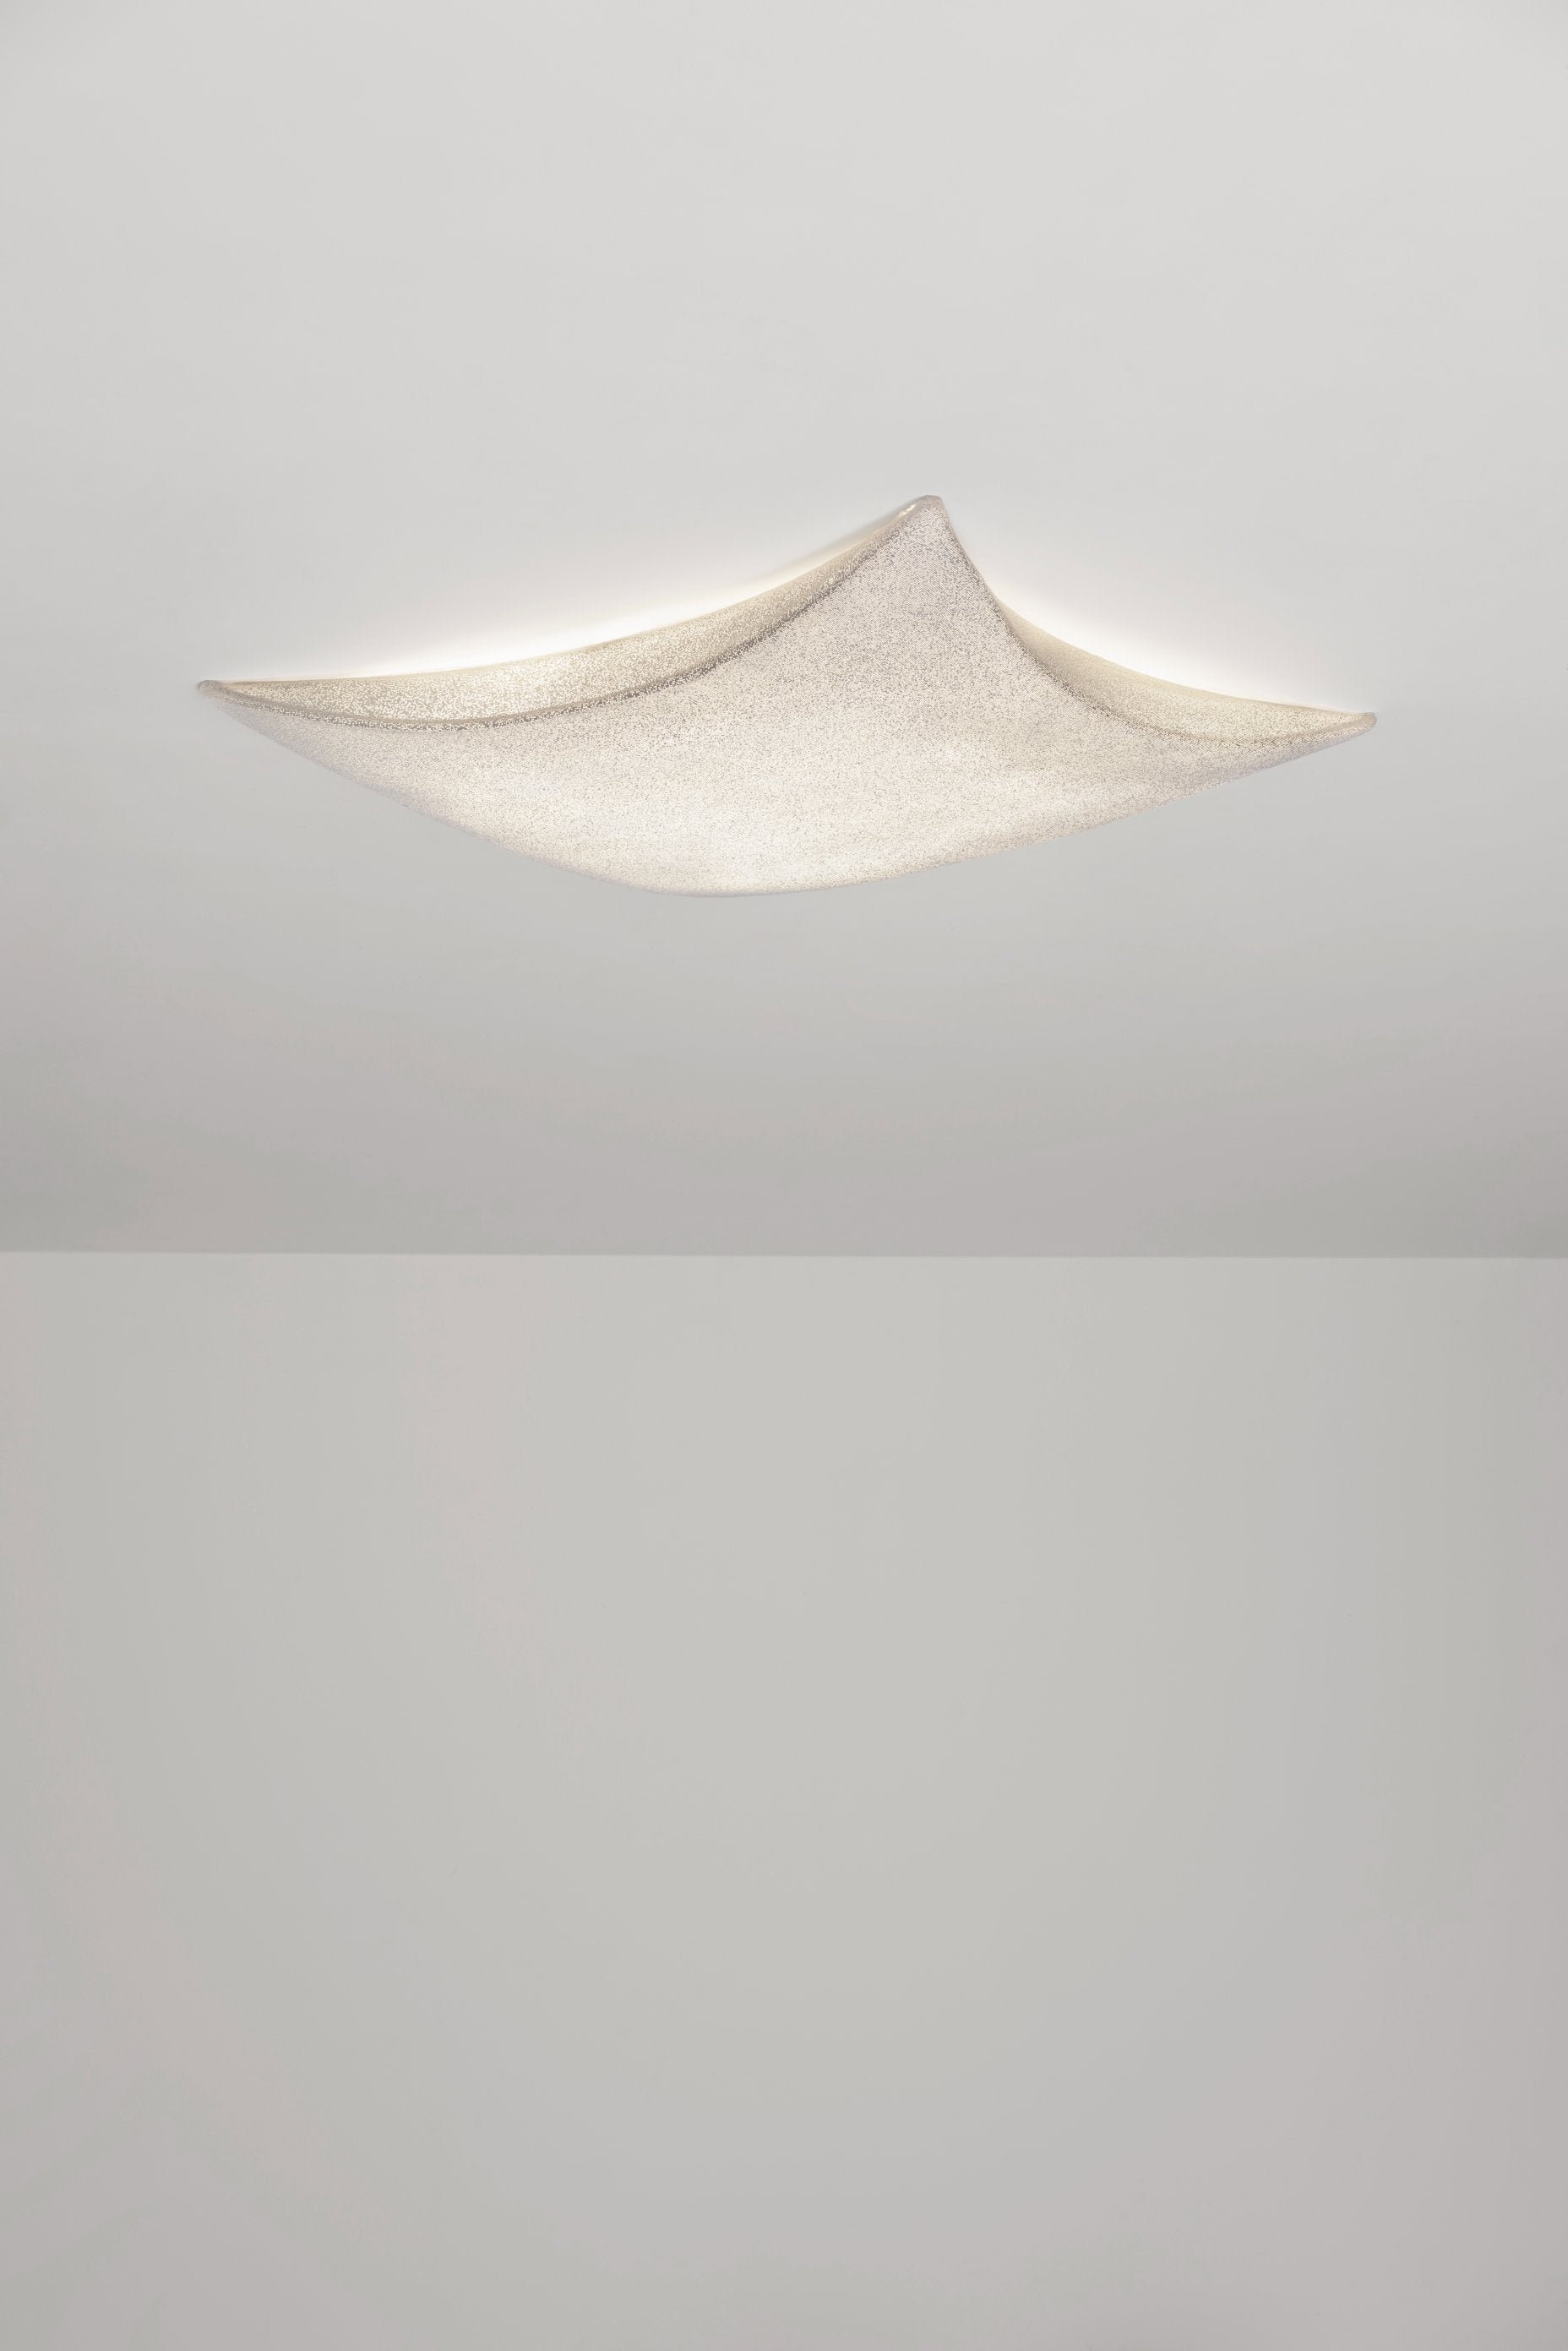 KITE G - Ceiling / Wall Light